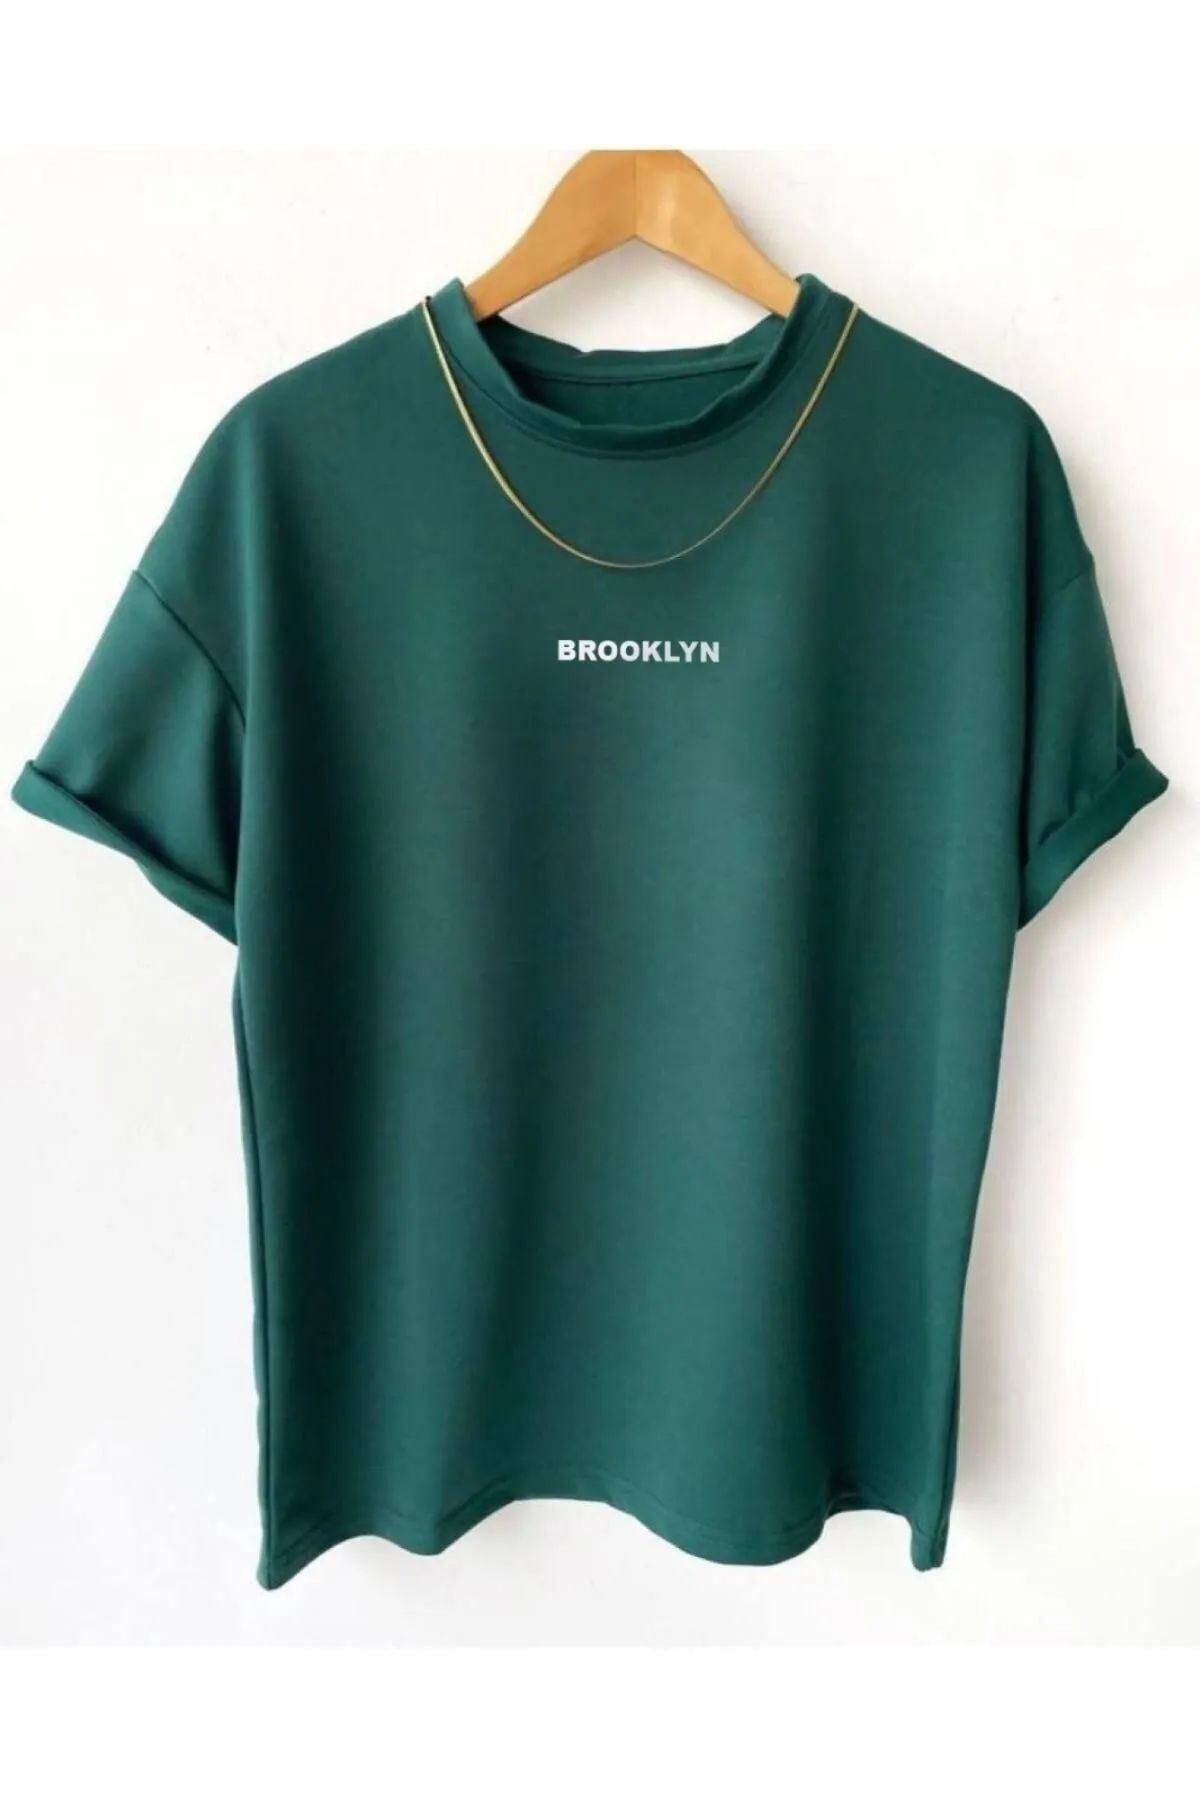 SEVLOVE Unisex Yeşil Brooklyn Baskılı Oversize Tshirt